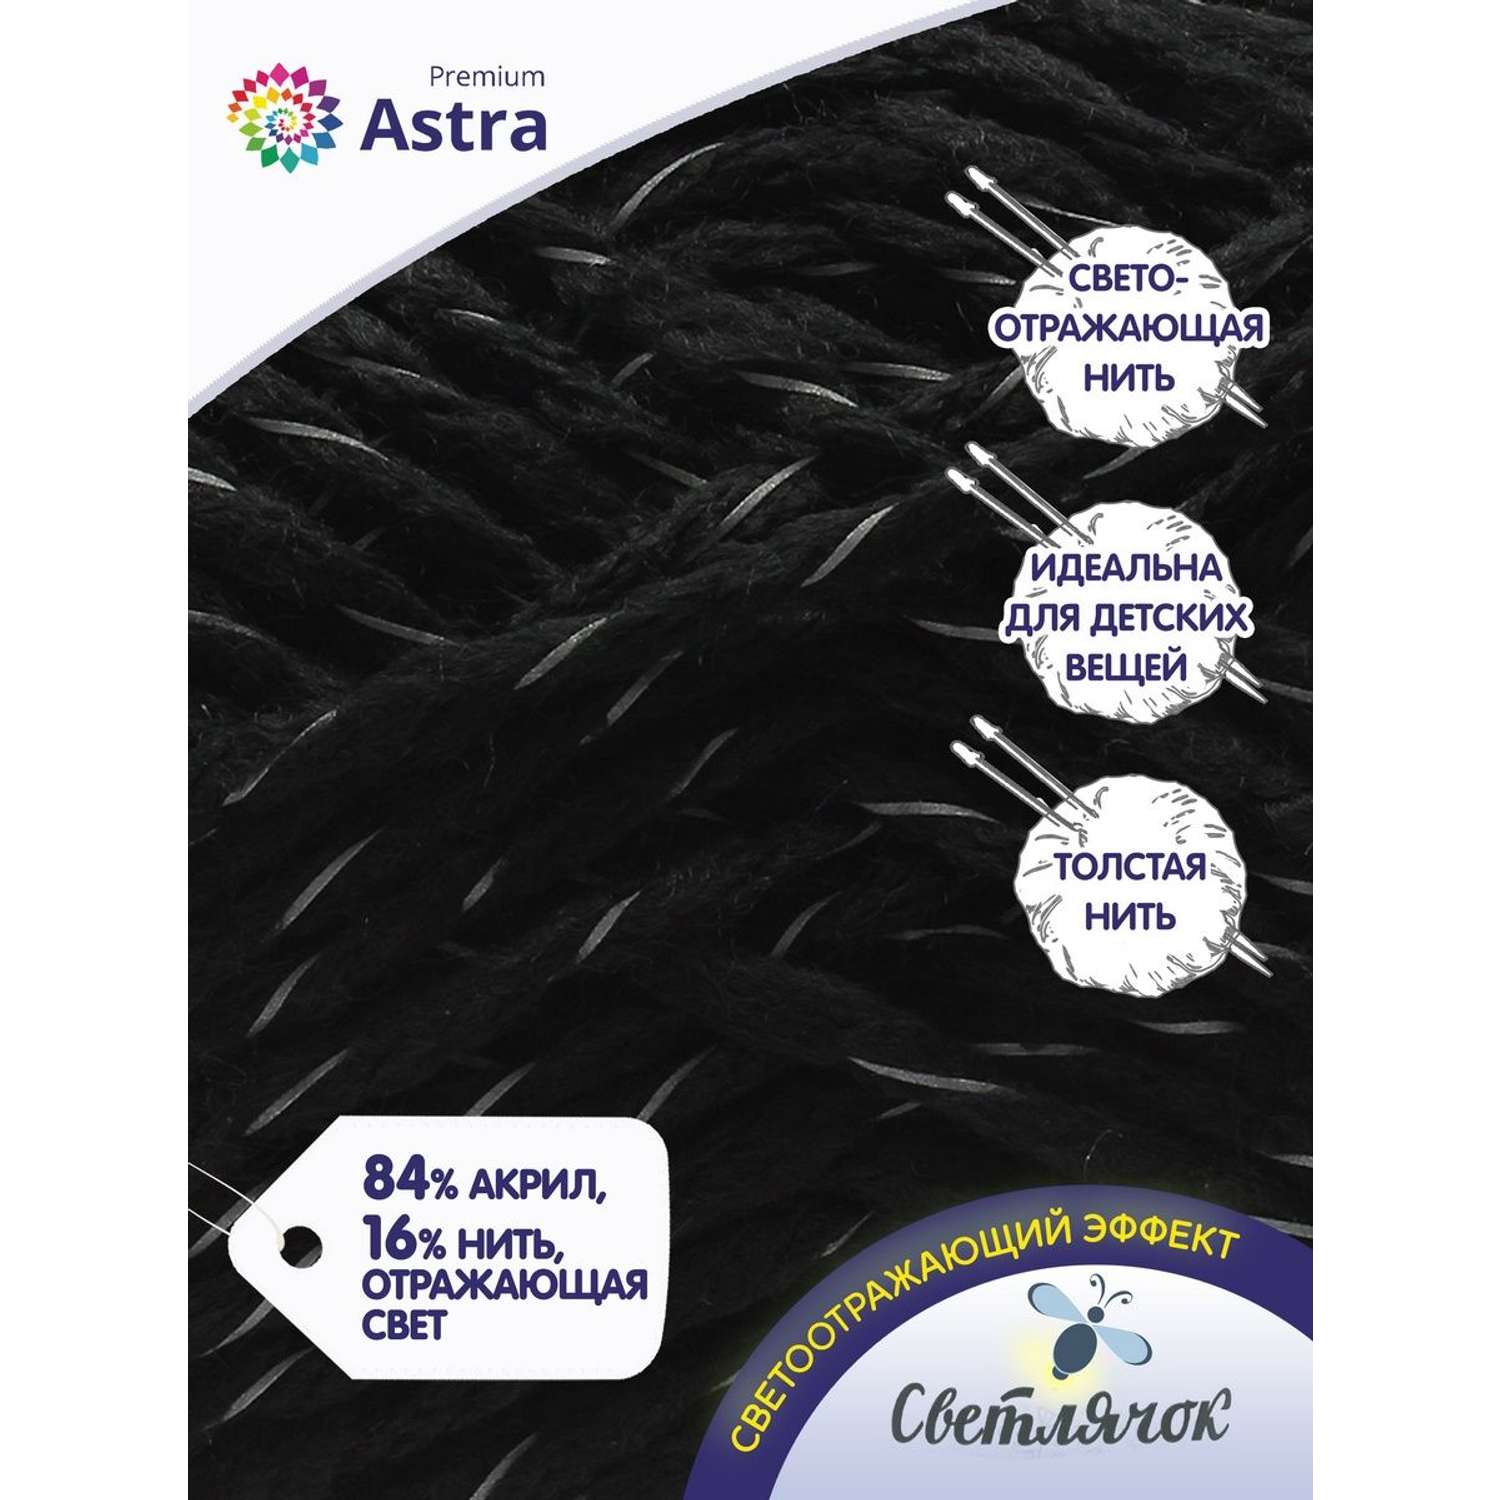 Пряжа Astra Premium Светлячок Reflective светоотражающая для детской одежды 100 г 90 м 999 черный 2 мотка - фото 2